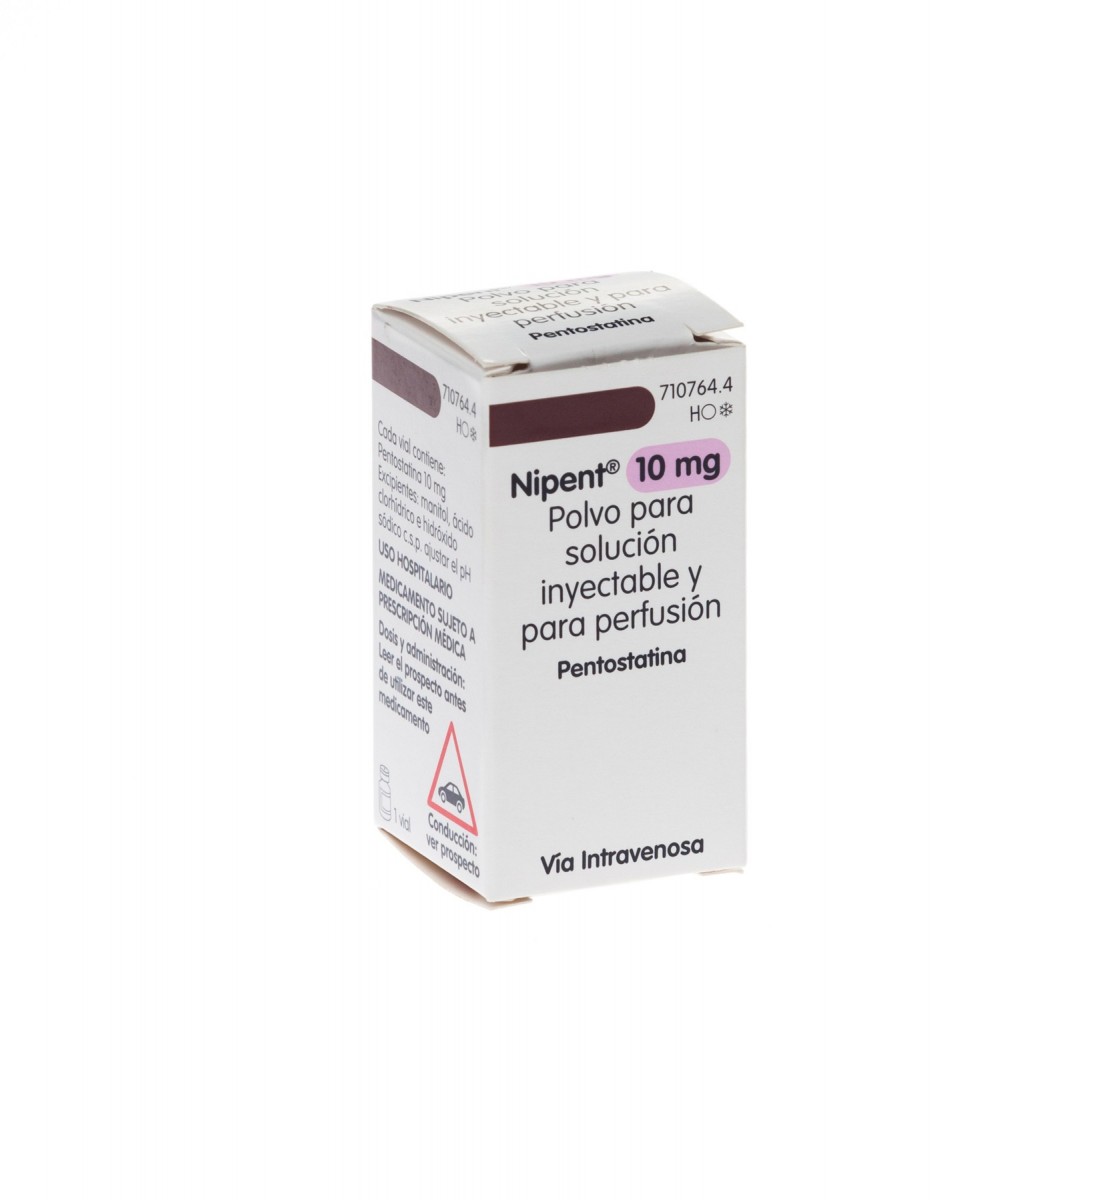 NIPENT 10 mg POLVO PARA SOLUCION INYECTABLE Y PARA PERFUSION , 1 vial fotografía del envase.